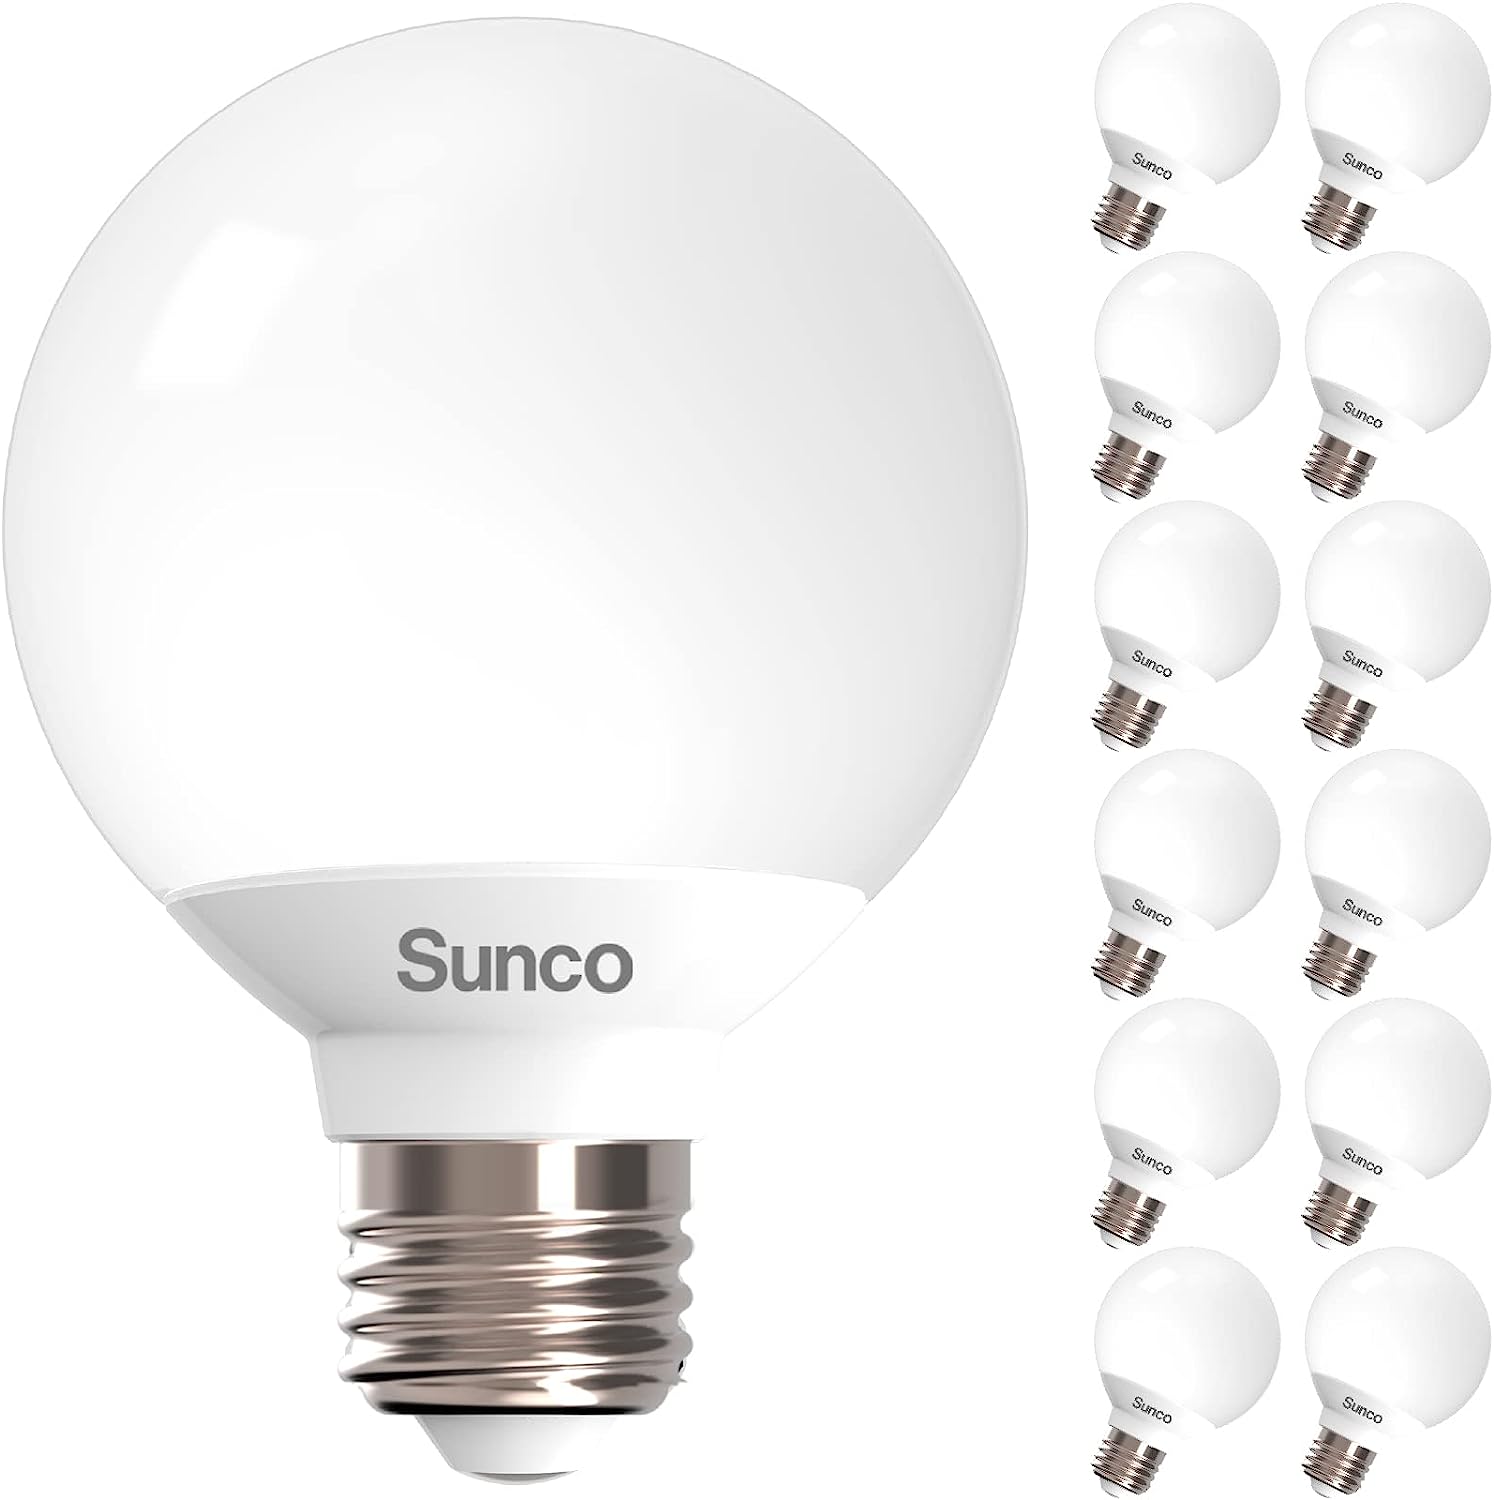 Sunco 12 Pack Vanity Globe Light Bulbs G25 LED for [...]